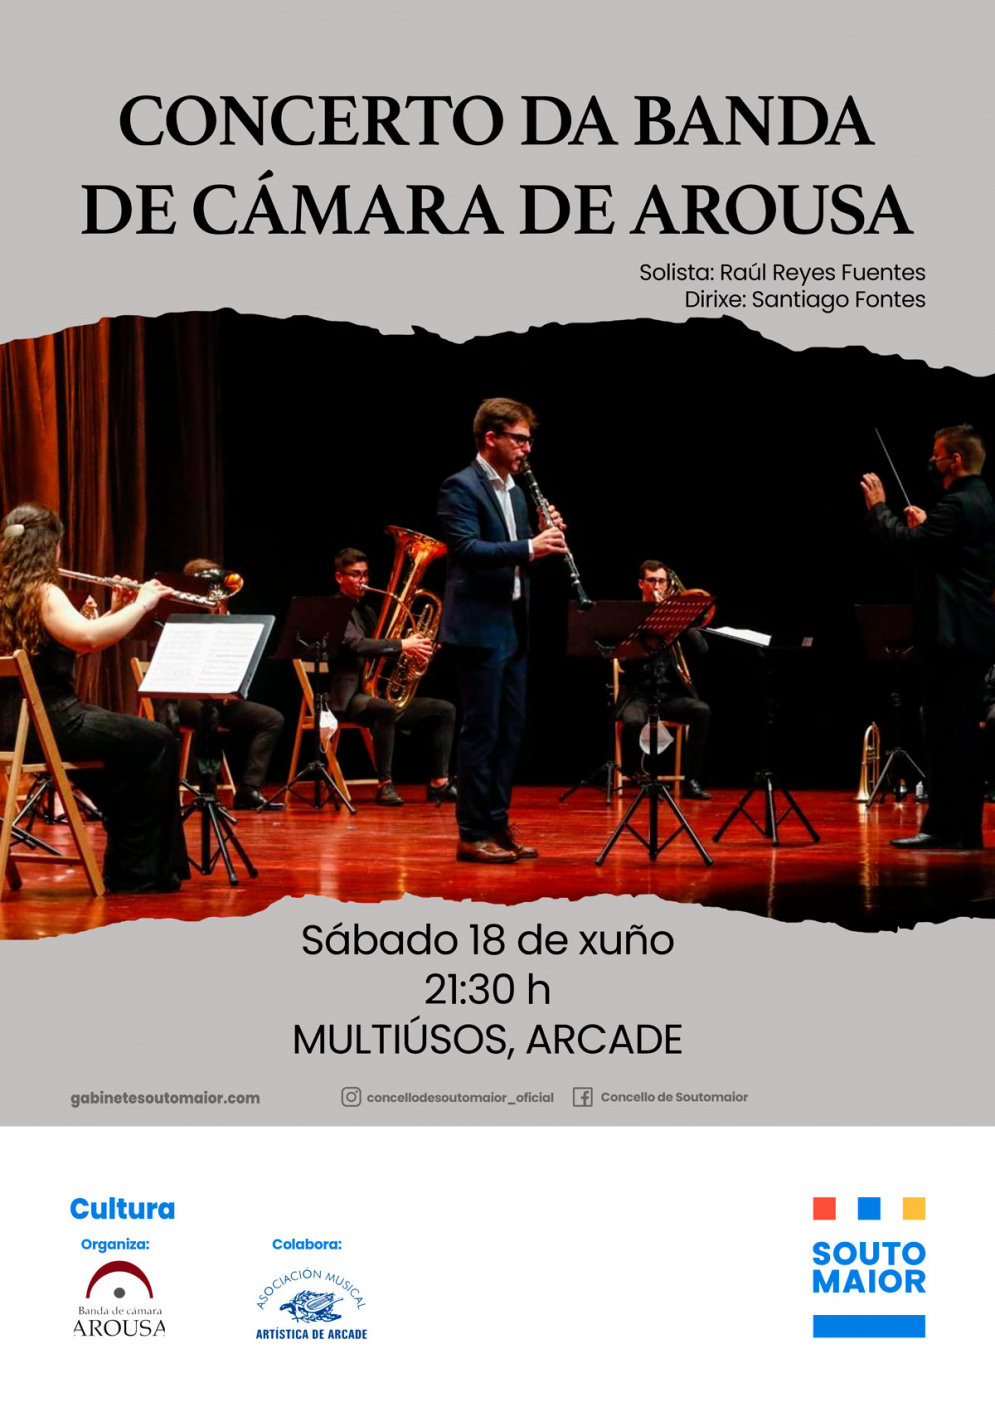 Concerto da Banda de Cámara de Arousa, solista: Raúl Reyes Fuentes